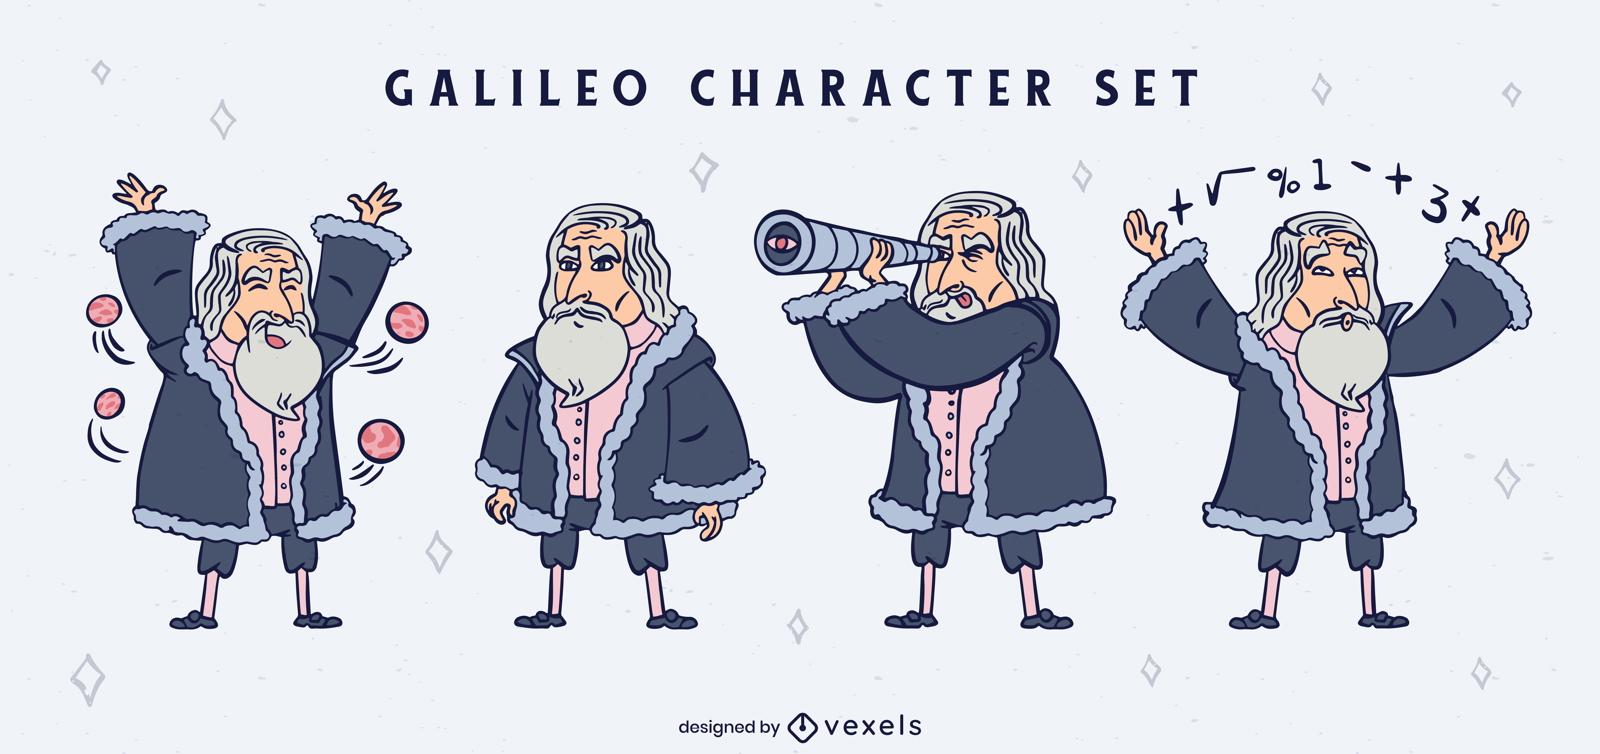 Galileo Galilei Zeichentrick-Zeichensatz